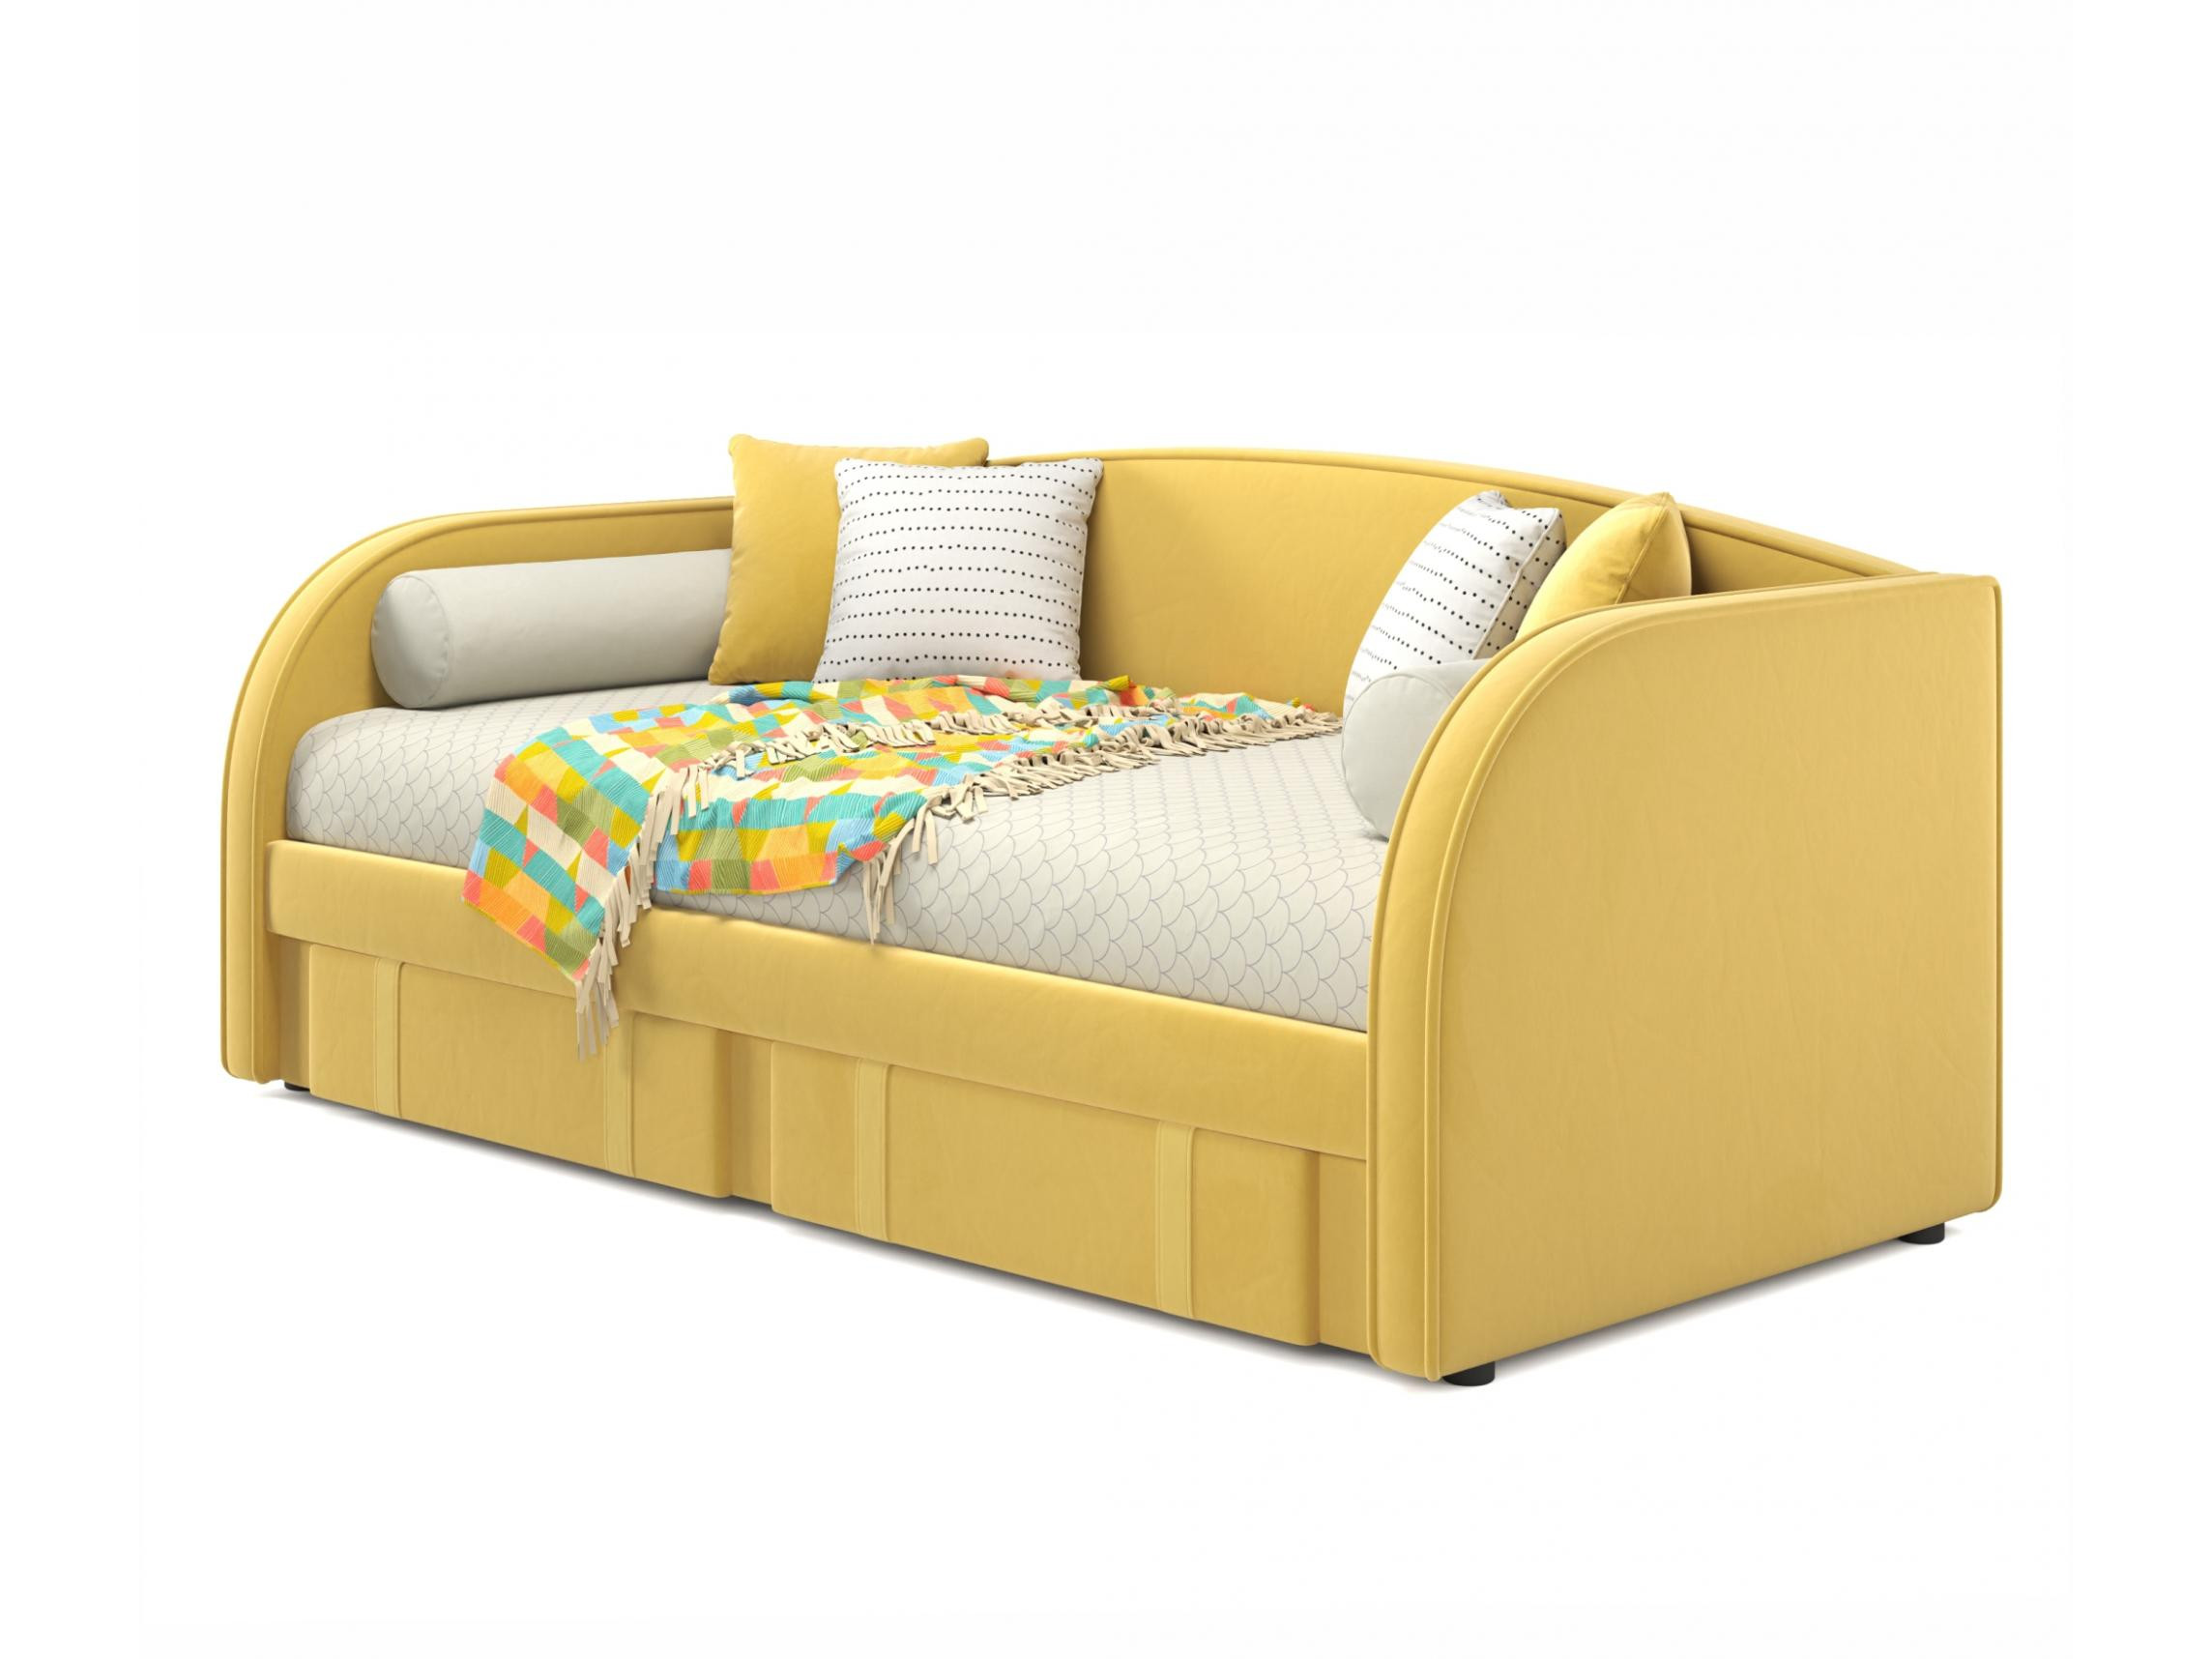 Мягкая кровать Elda 900 желтая с ортопедическим основанием и матрасом PROMO B COCOS желтый, Желтый, Велюр, ДСП